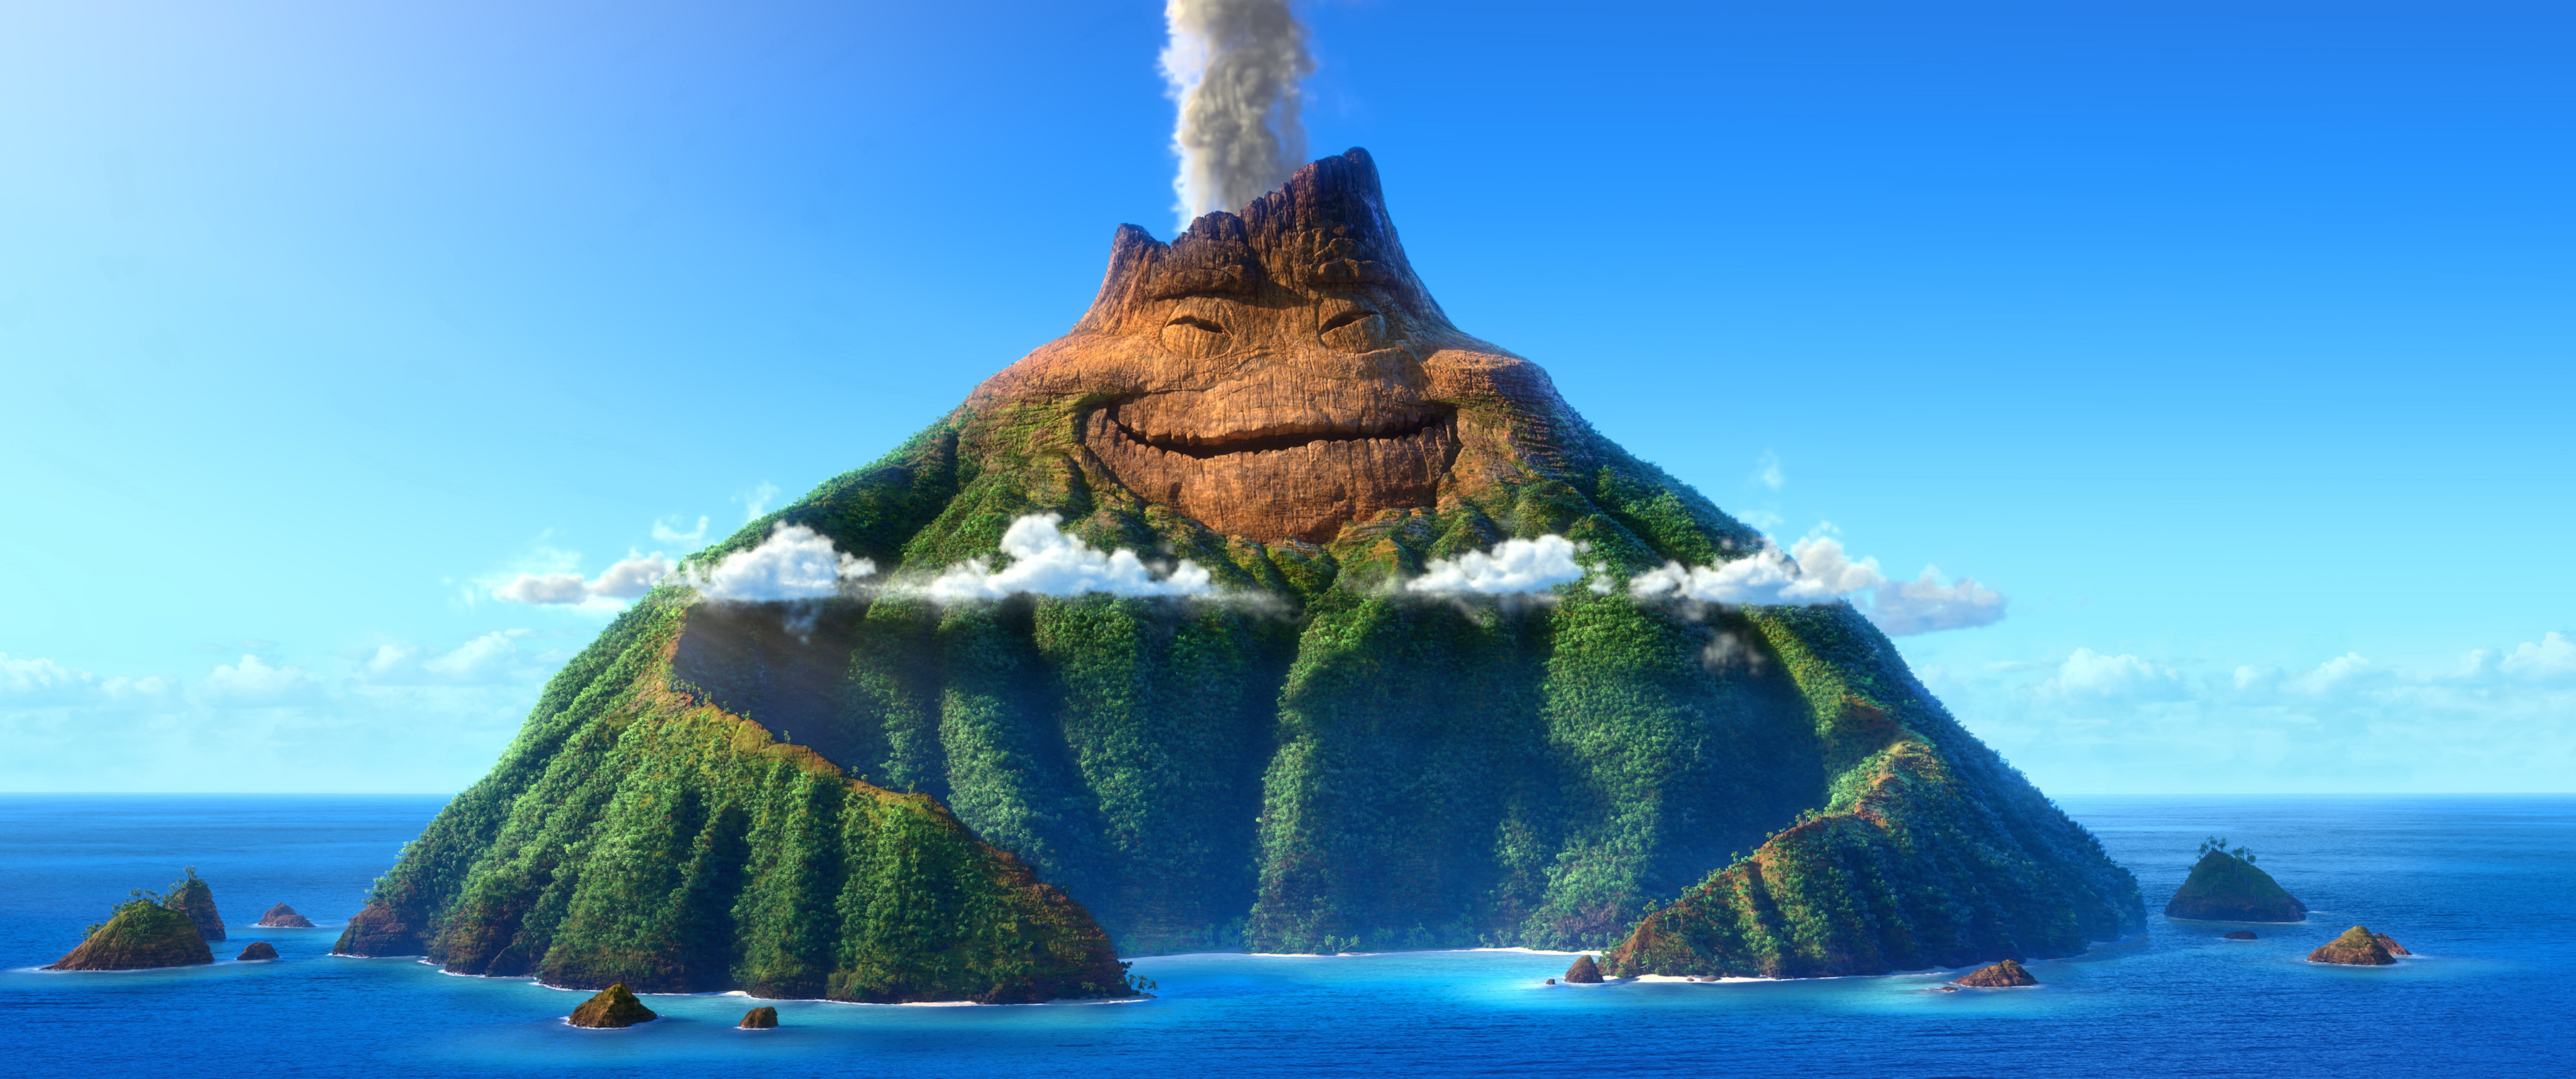 Pixar's Short Film, Lava